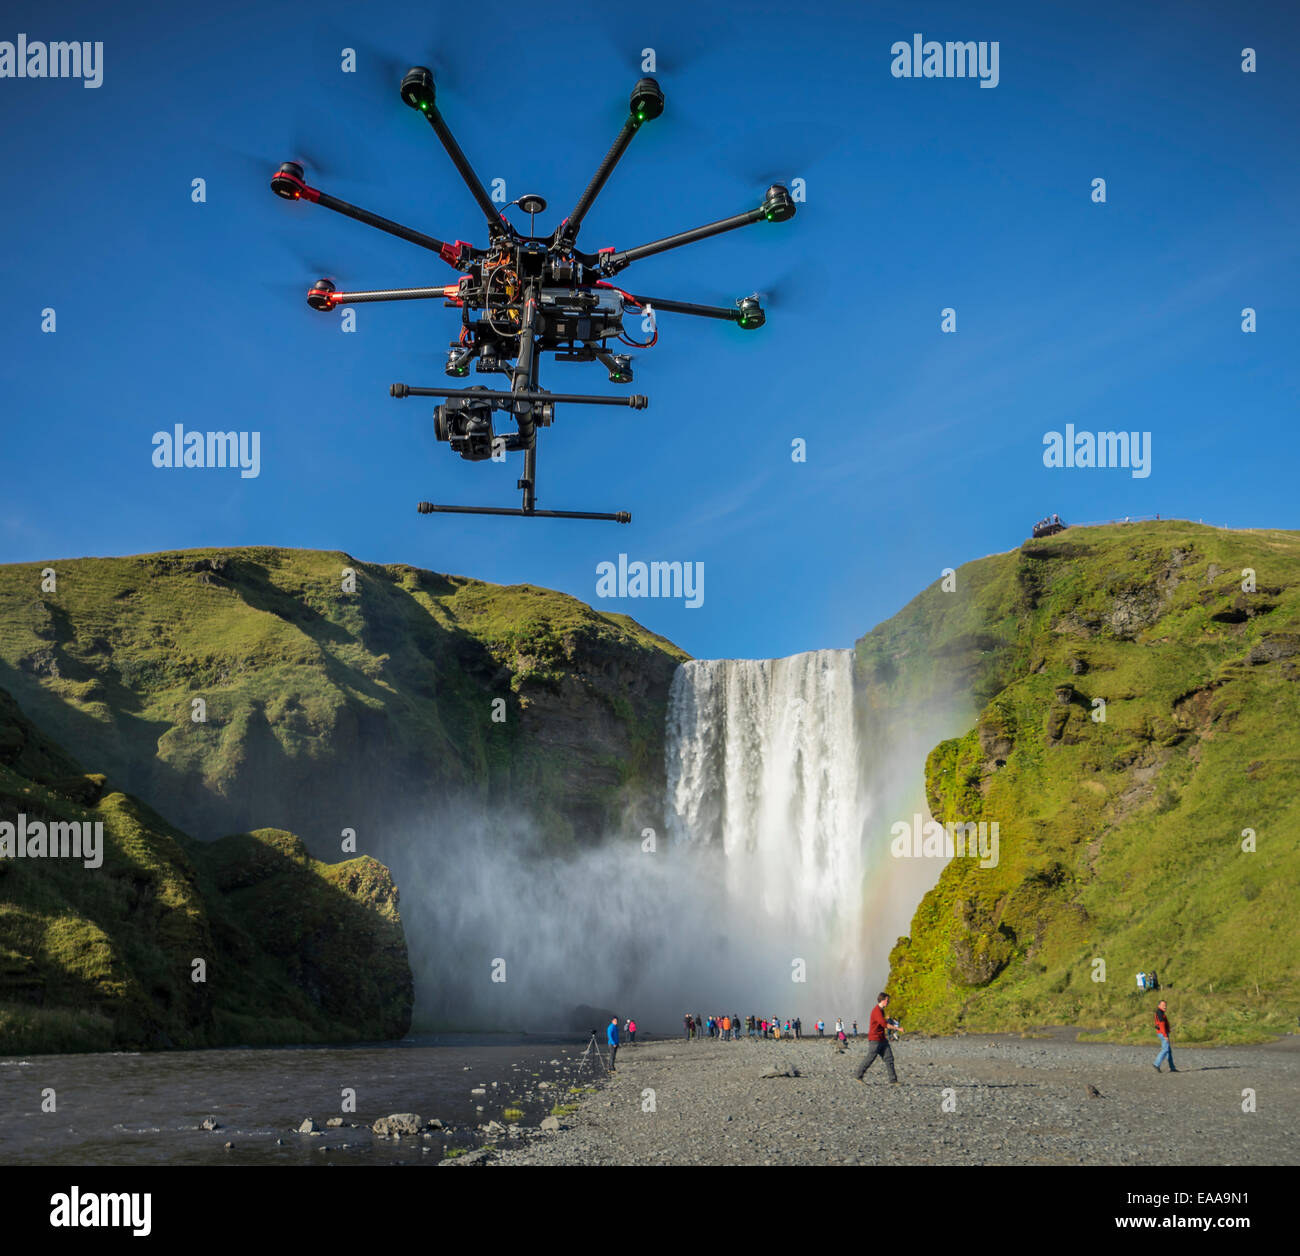 DJI S1000, Drone contrôlé par radio le vol avec un appareil photo, des cascades Skogafoss, Islande Banque D'Images